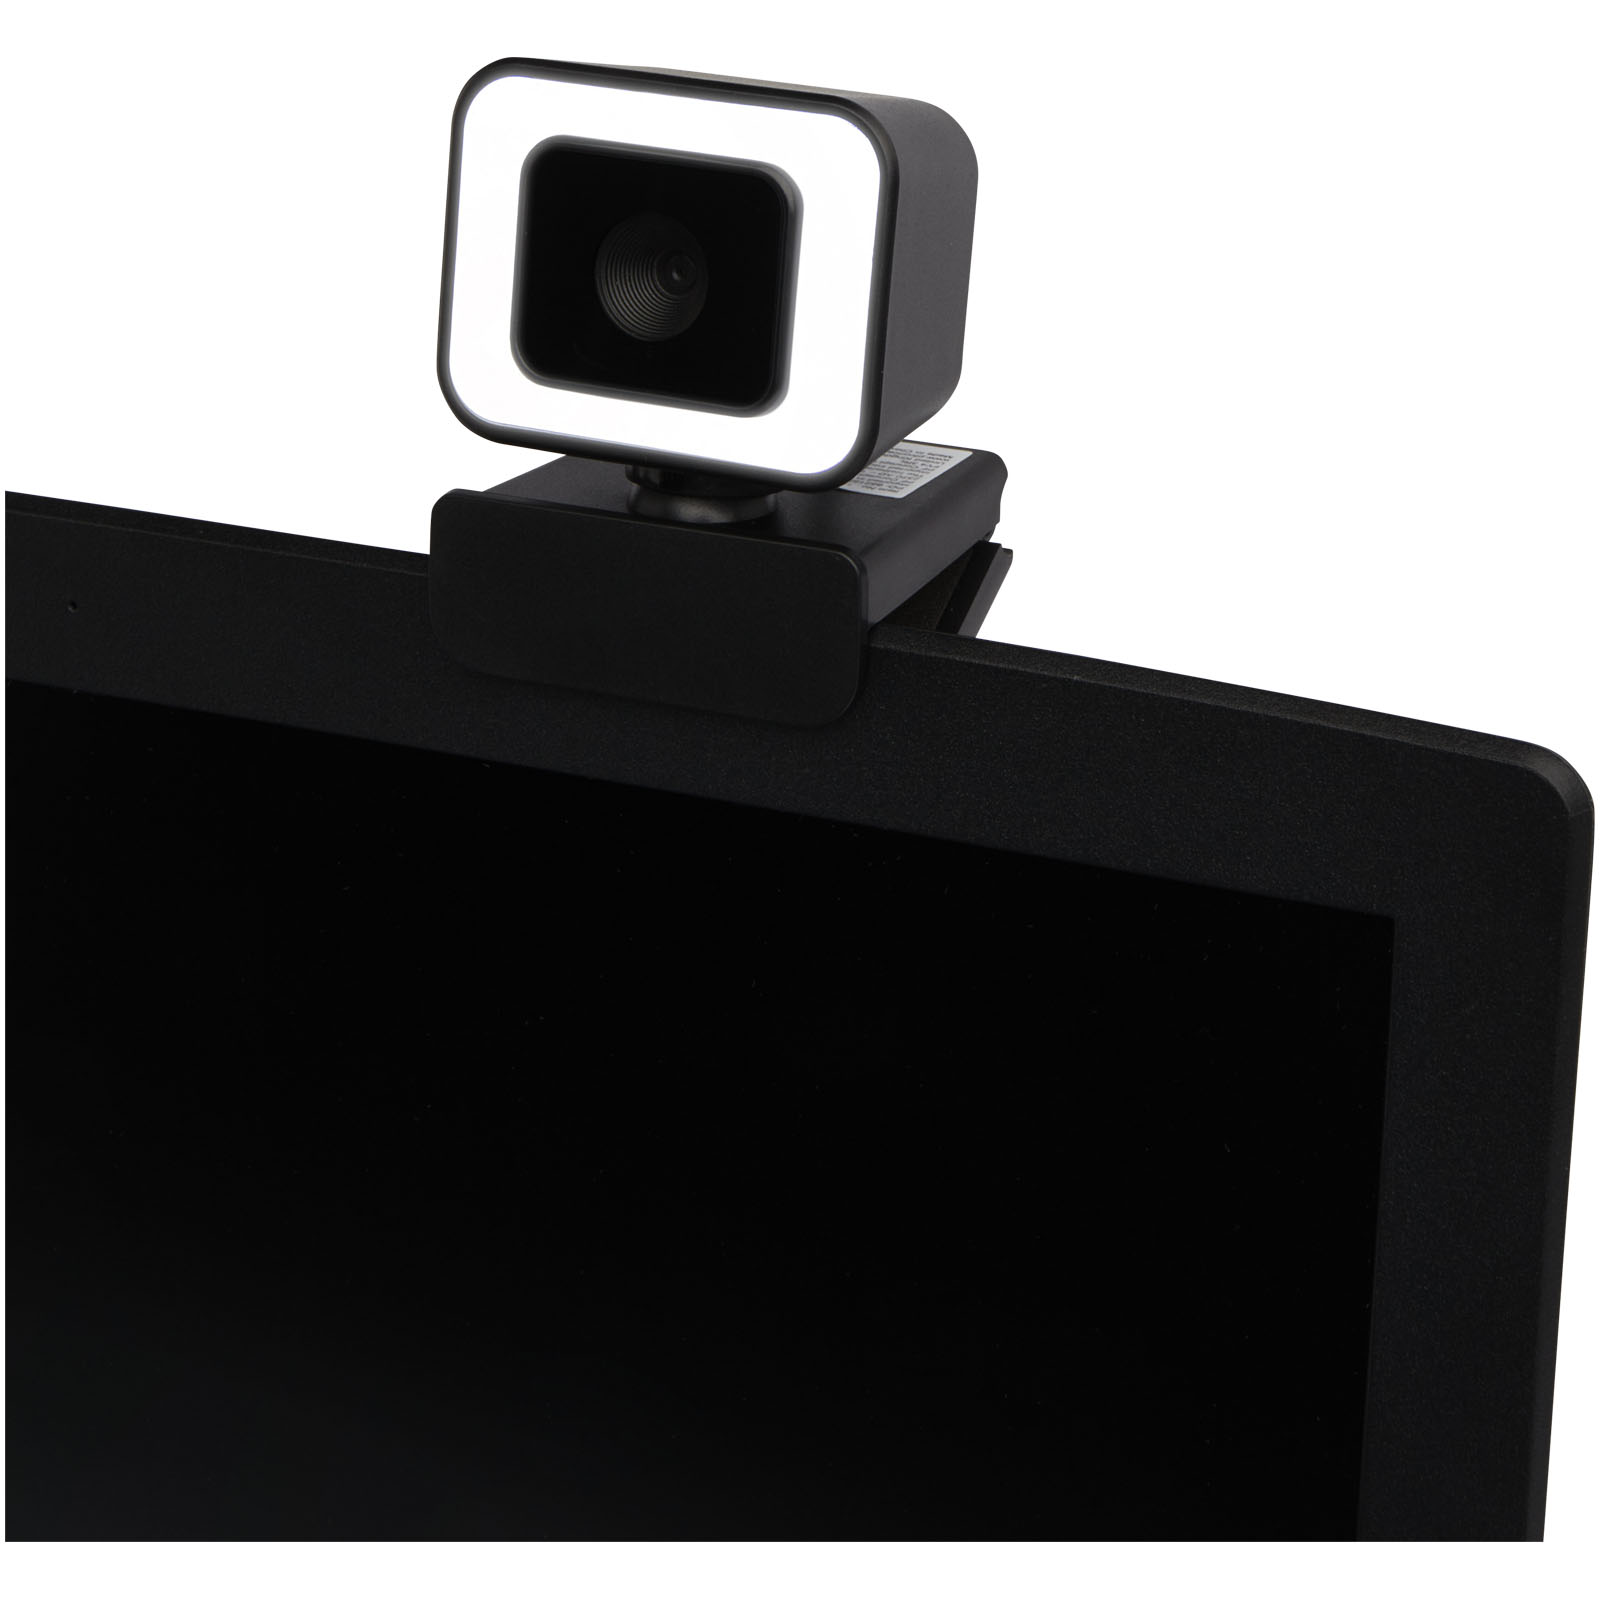 Accessoires pour ordinateur publicitaires - Webcam Hybrid - 3